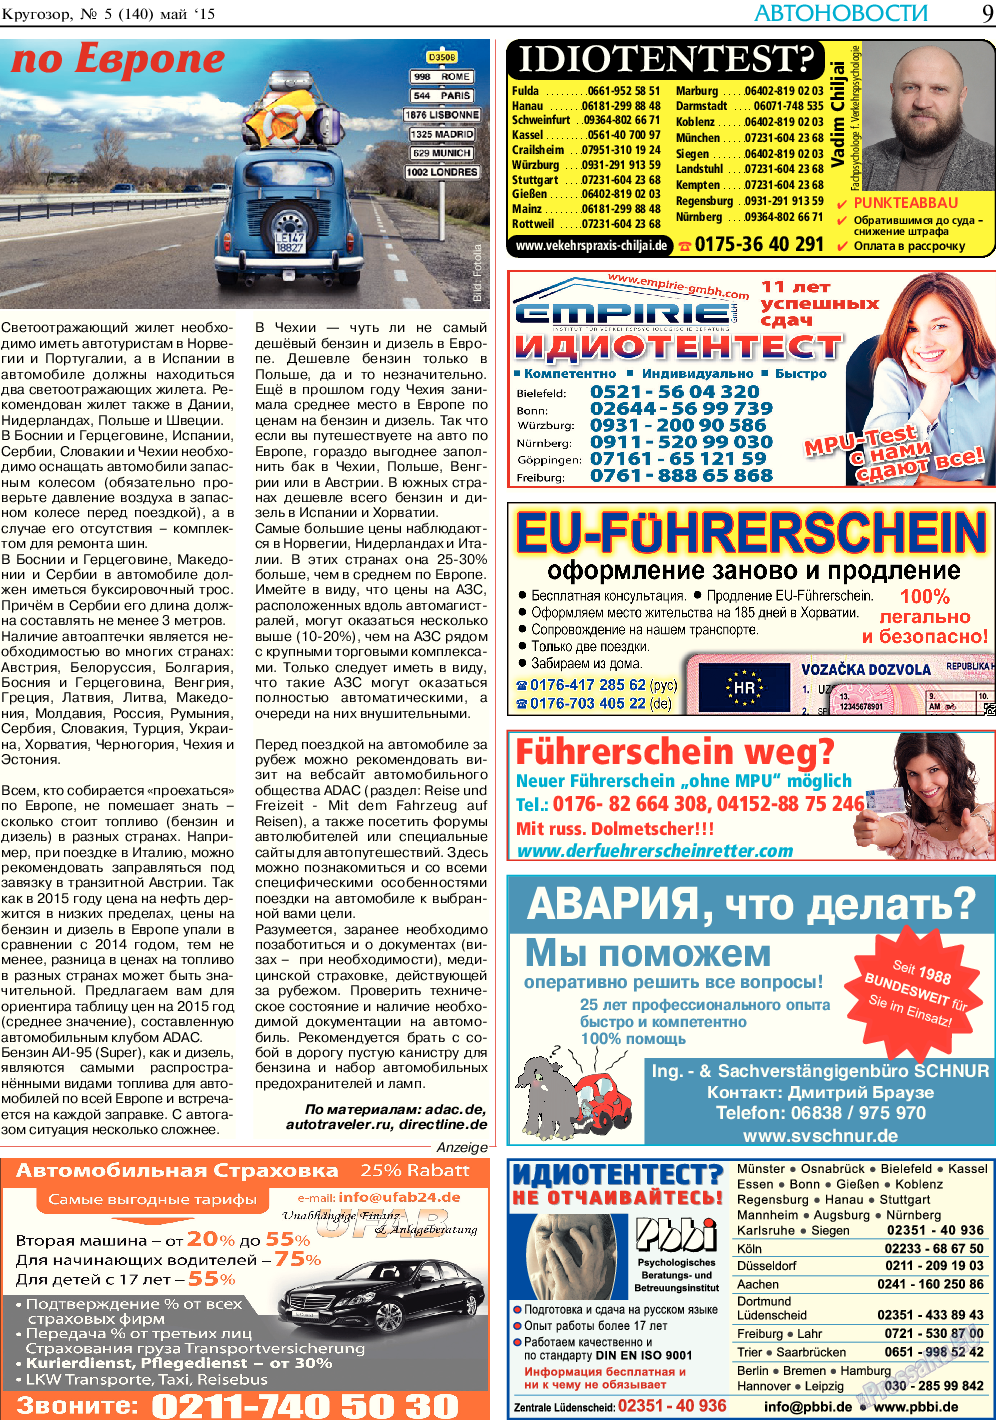 Кругозор, газета. 2015 №5 стр.9